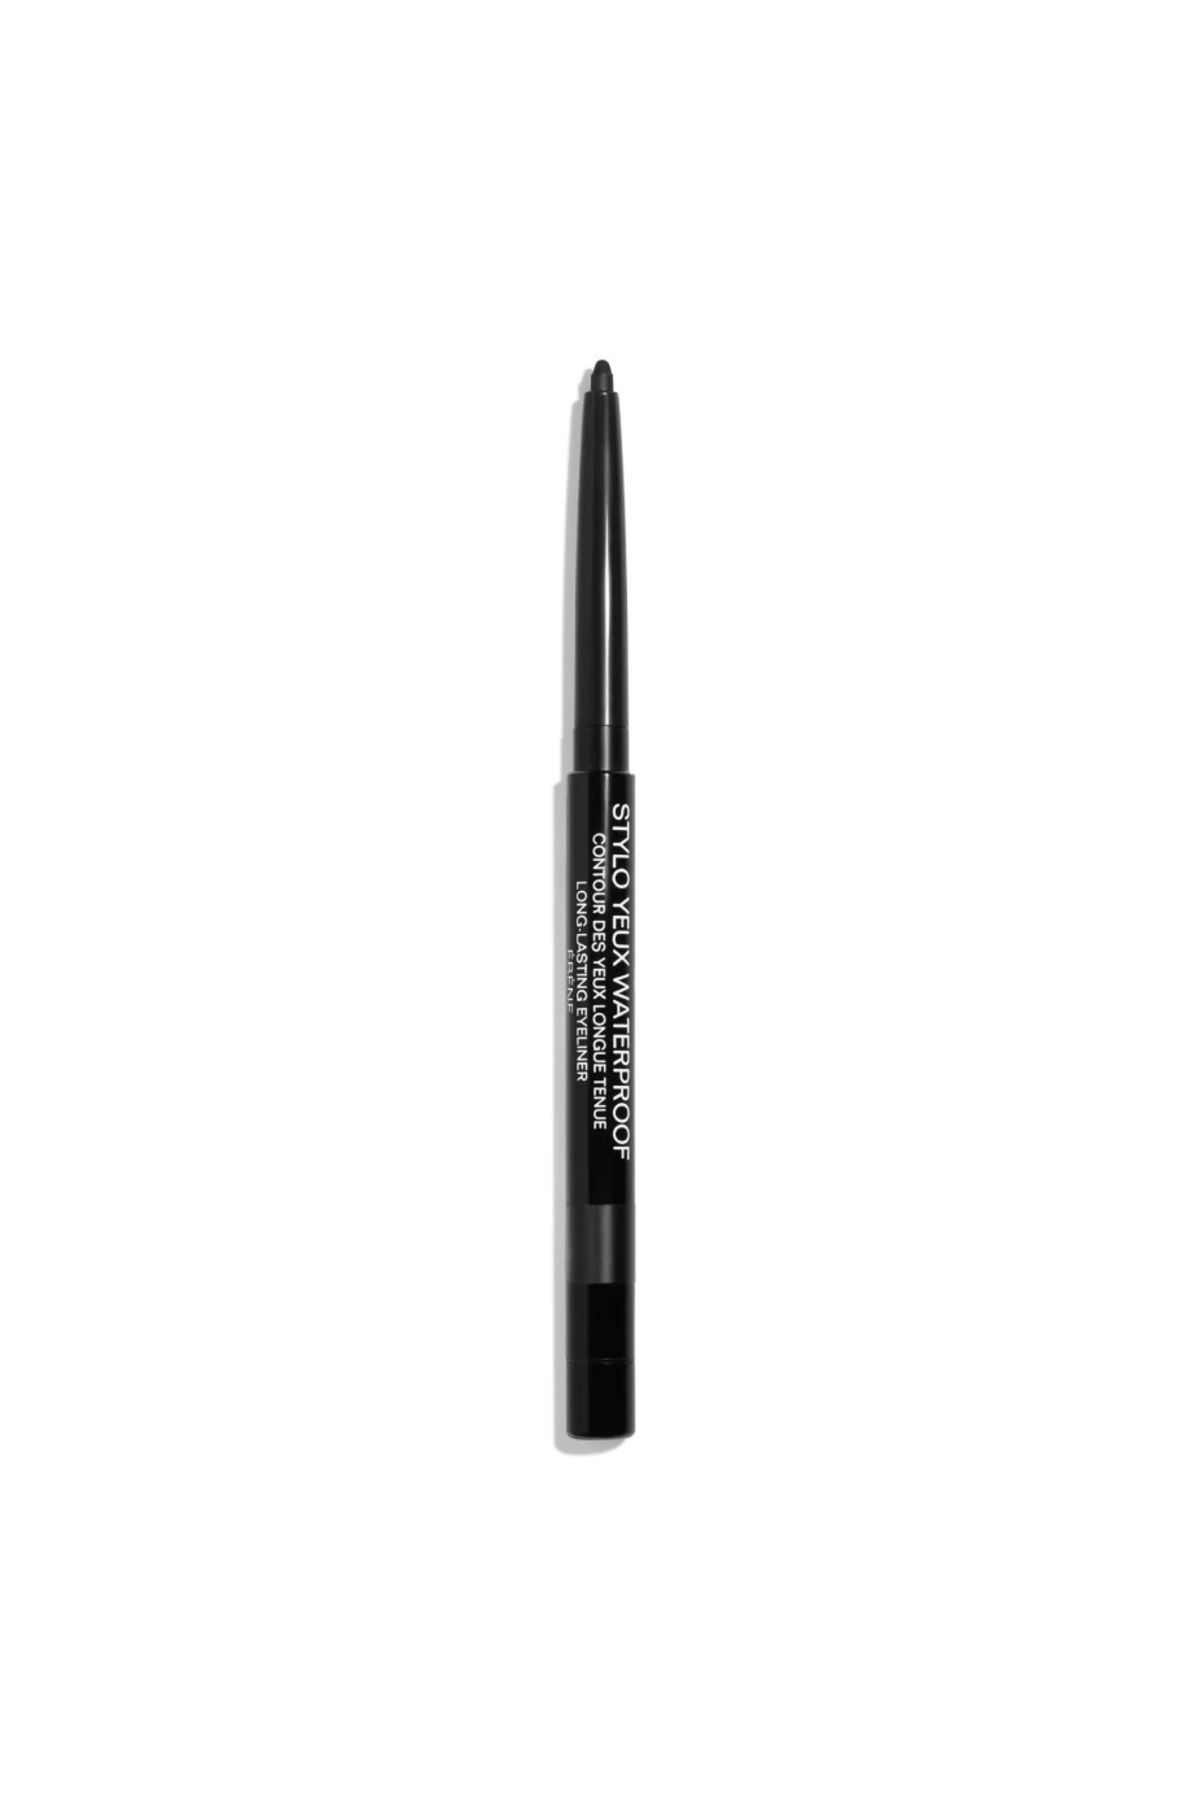 Chanel STYLO YEUX WATERPROOF - Suya Dayanıklı Uzun Süre Kalıcı Işıltı Verici Göz Kalemi